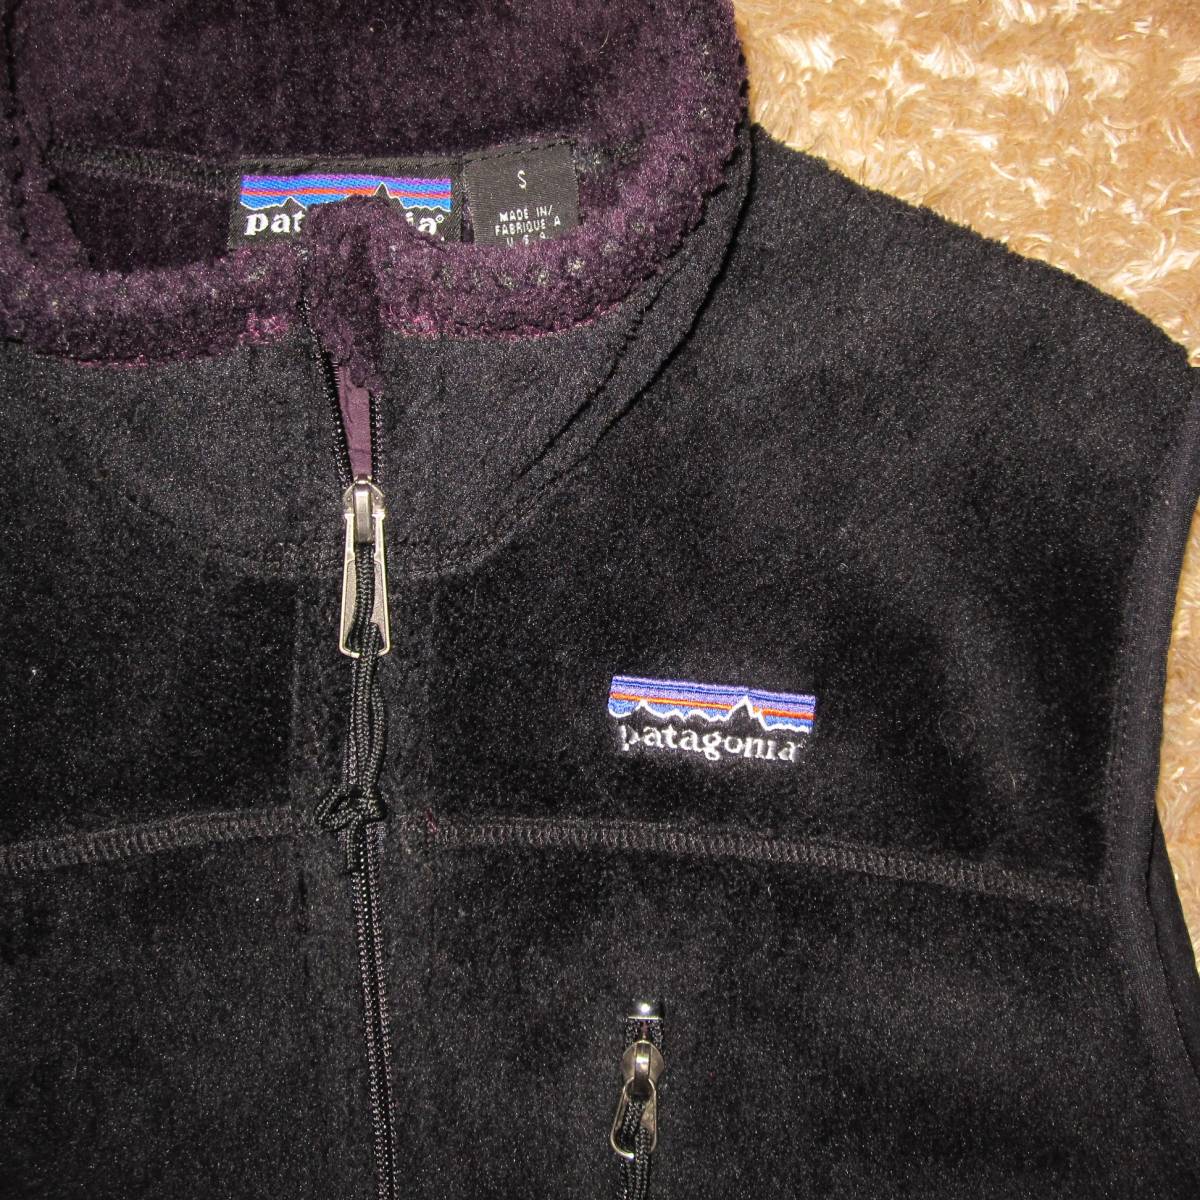 01 パタゴニア R4 ベスト (S) 刺繍タグ USA製 黒×紫 / ビンテージ